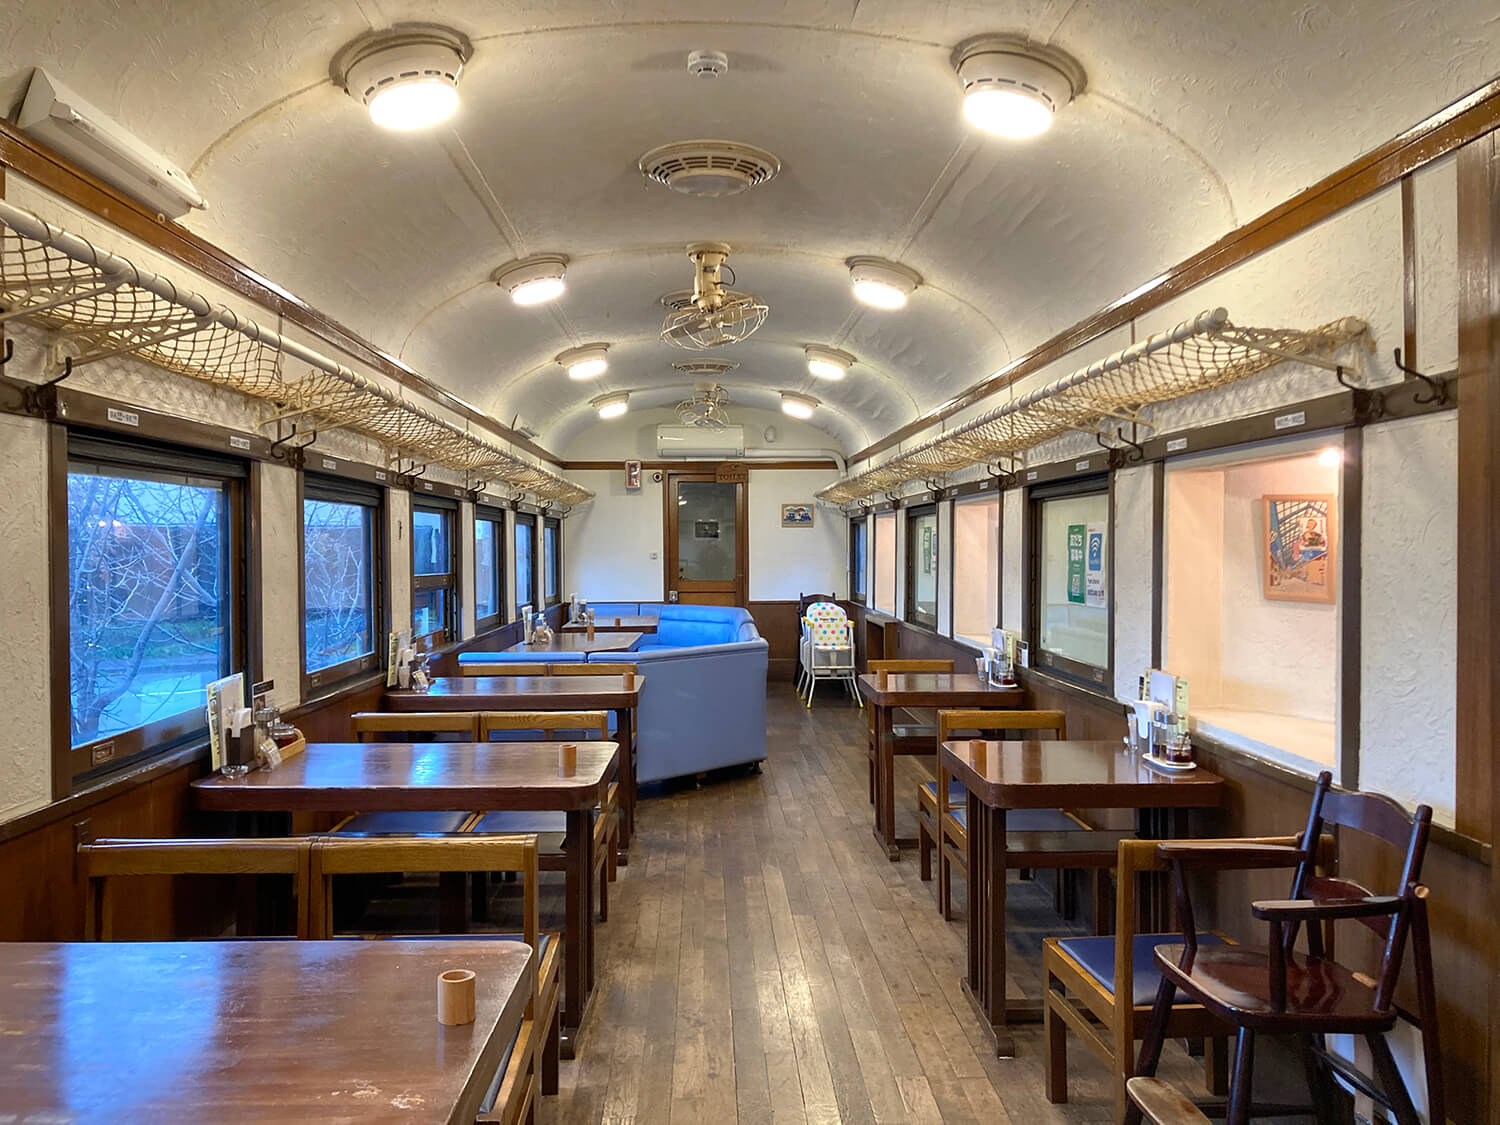 古い列車の雰囲気を活かしたノスタルジックな空間は、年配の方には懐かしく、若い世代には新鮮に映る